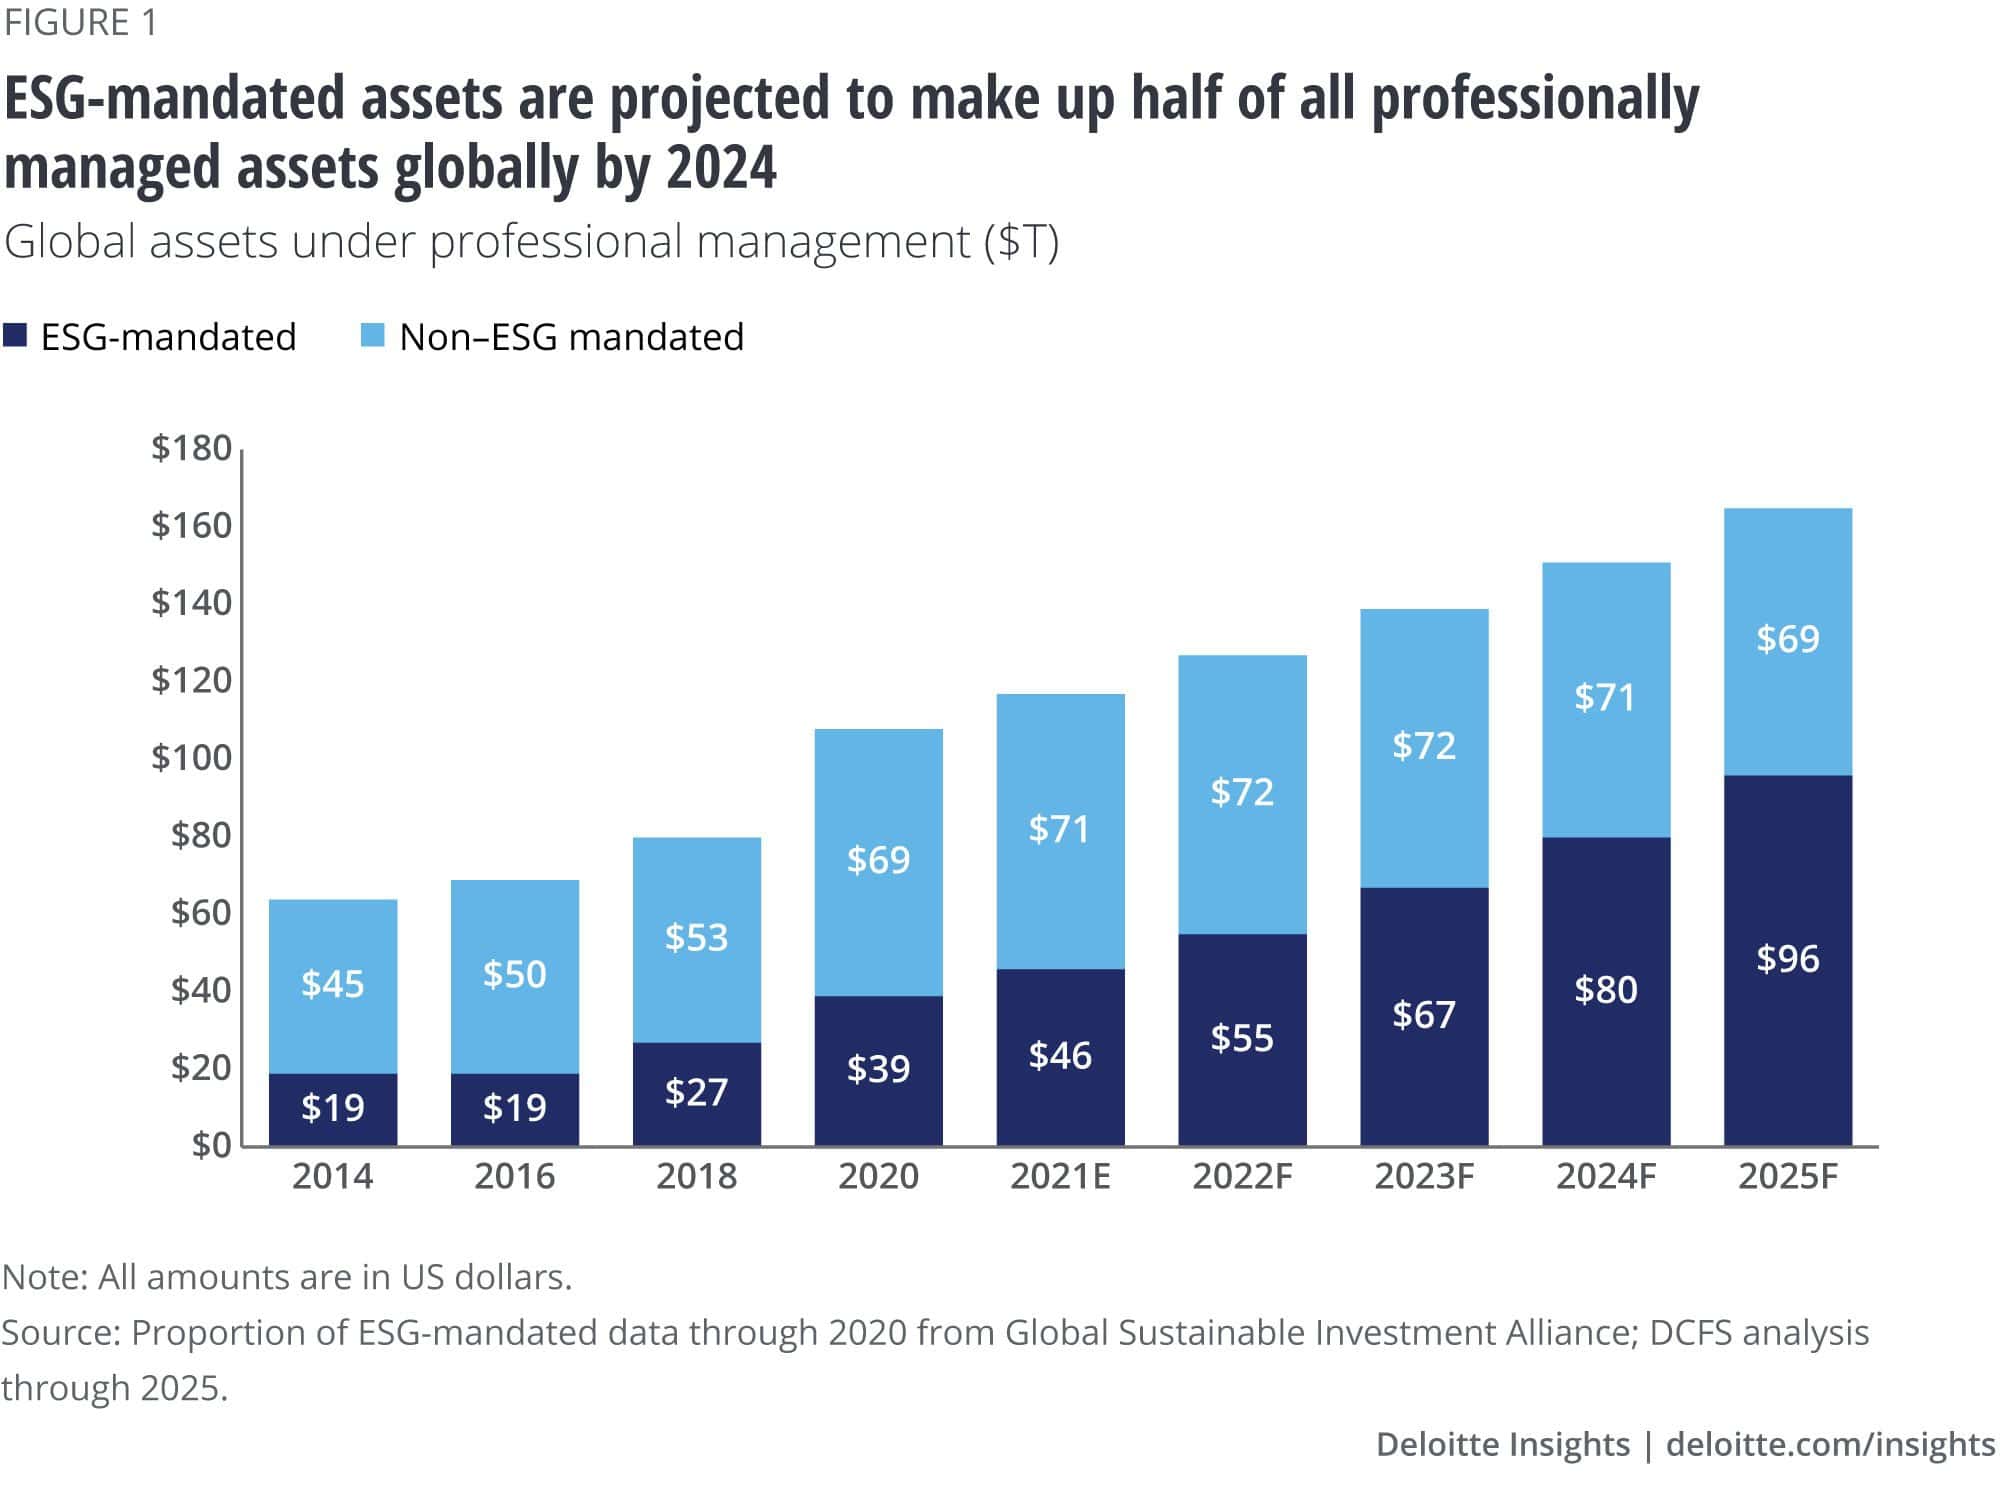 ESG asset forecasting